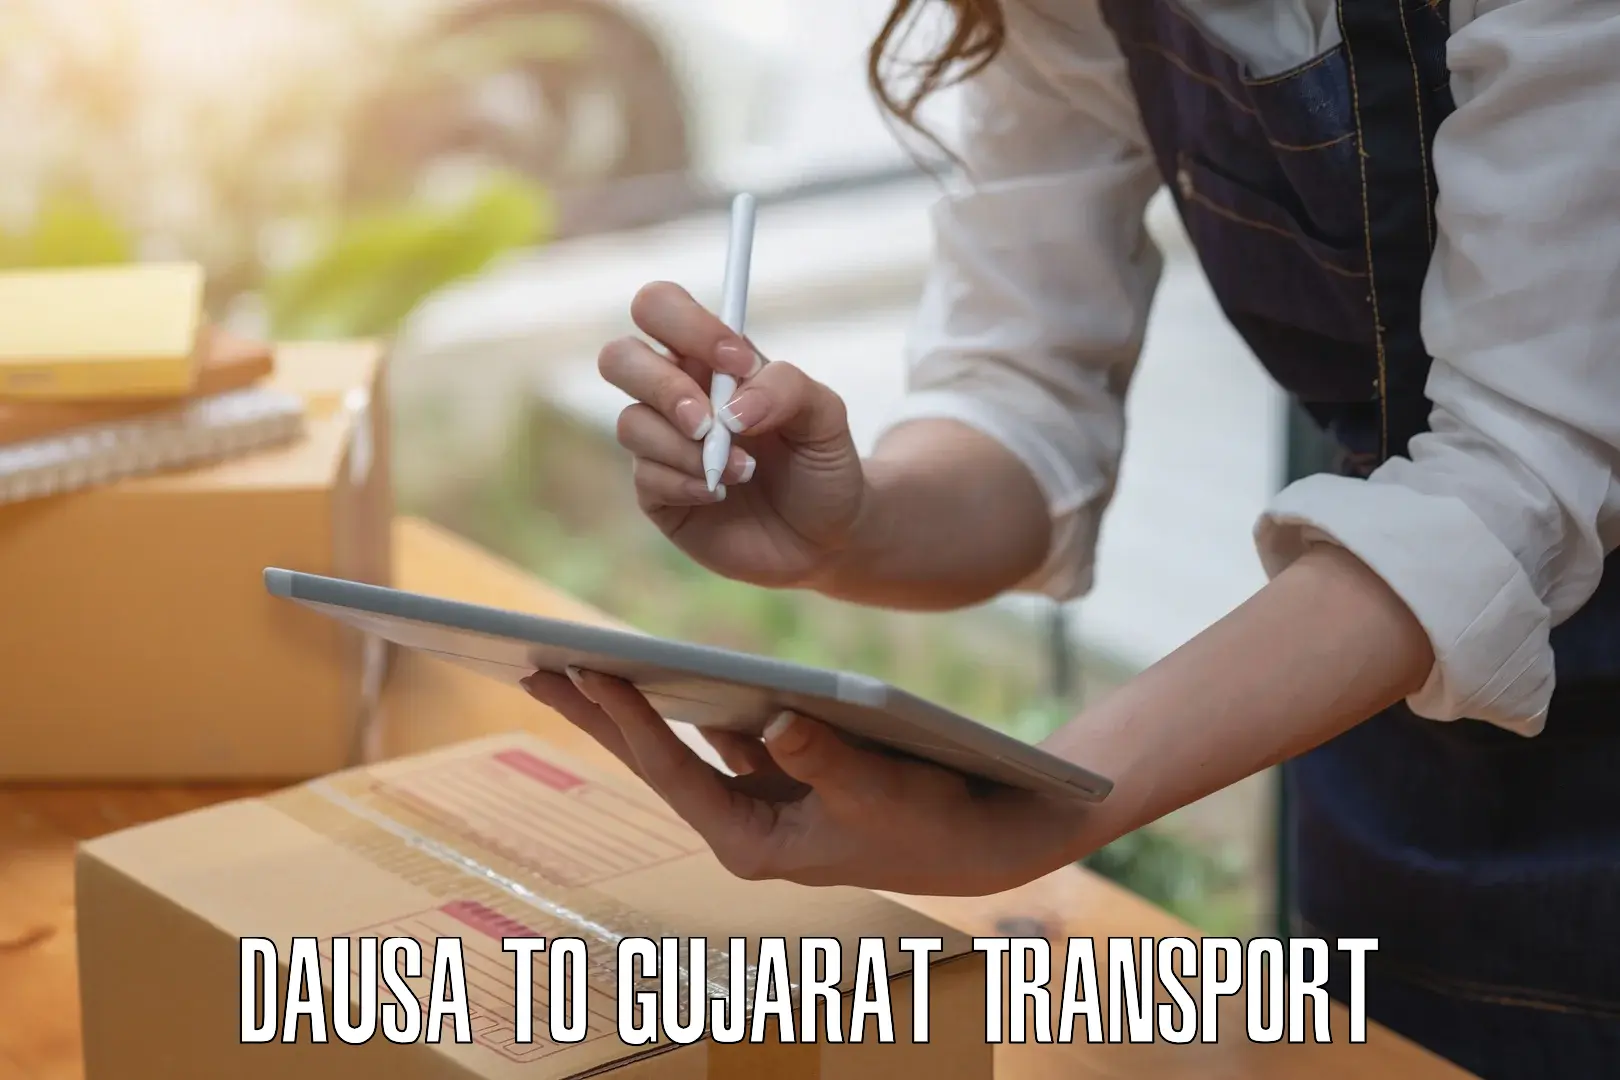 Furniture transport service in Dausa to Gujarat